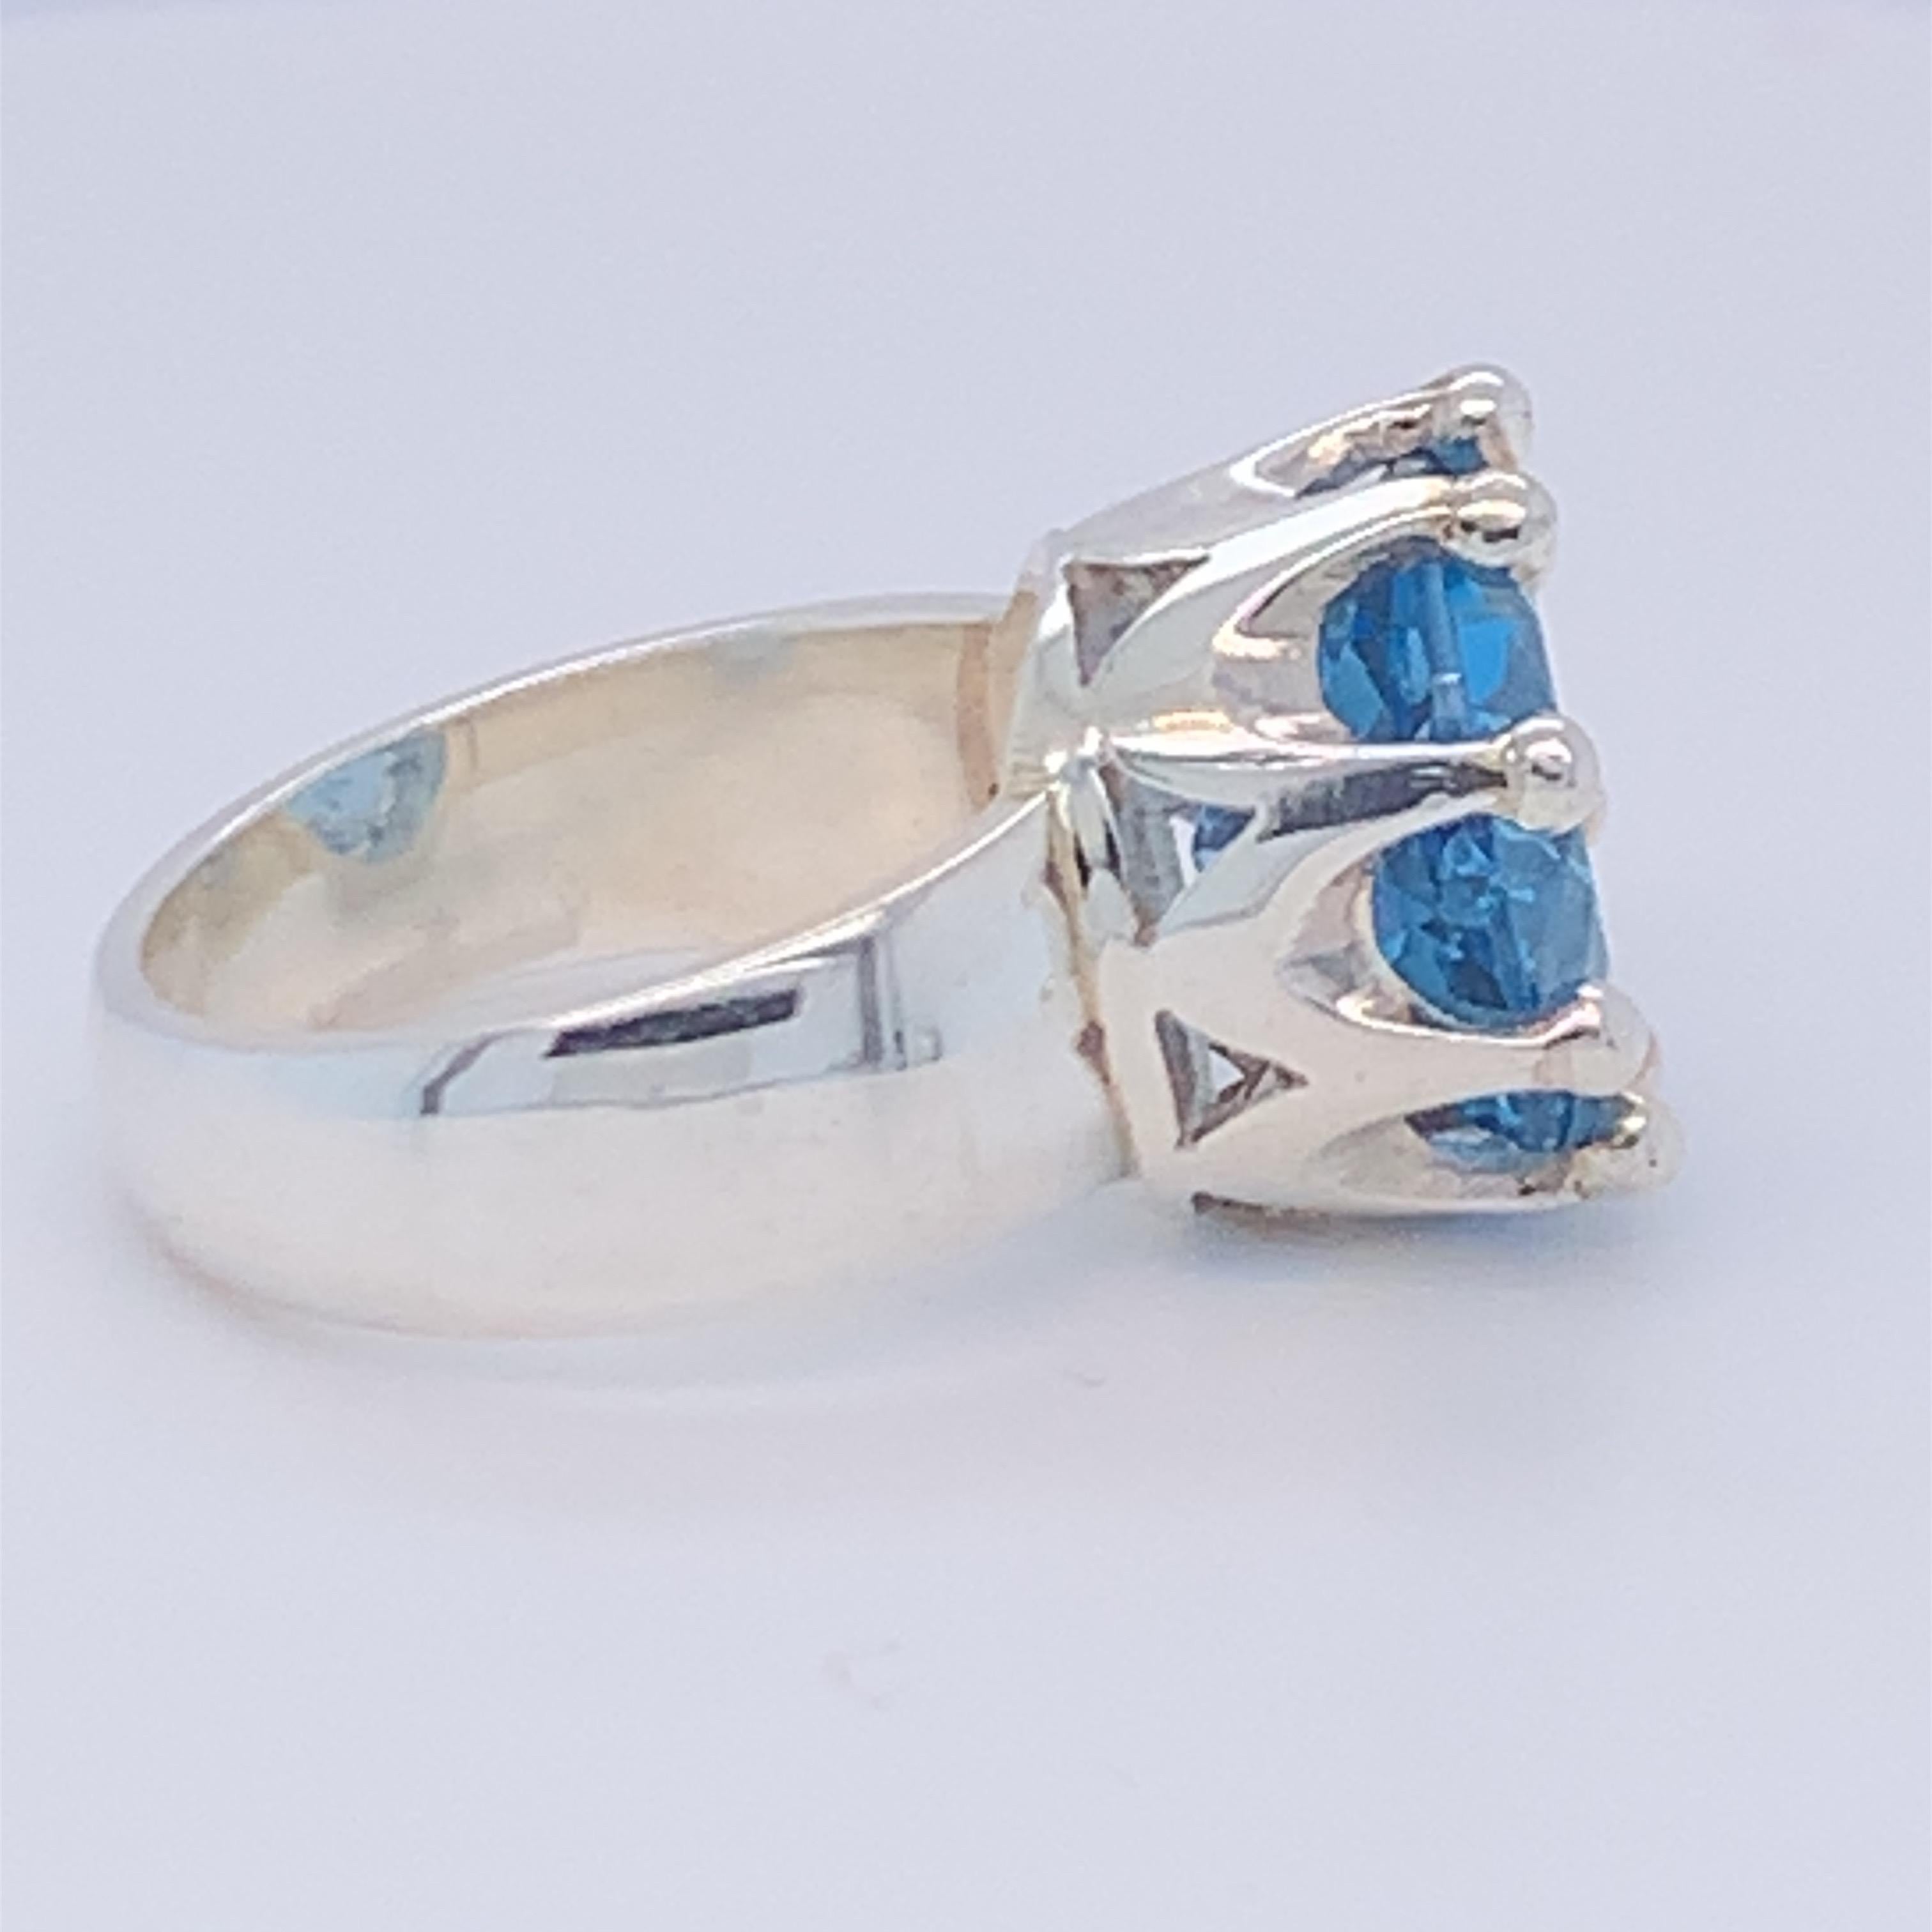 Dieser prächtige Ring im Kronendesign ist mit einem runden Blautopas besetzt. Dieses elegante und atemberaubende Stück ist sowohl für den Tag als auch für den Abend geeignet. In Sterlingsilber gefasst und von Meisterhand gefertigt.

Blauer Topas: